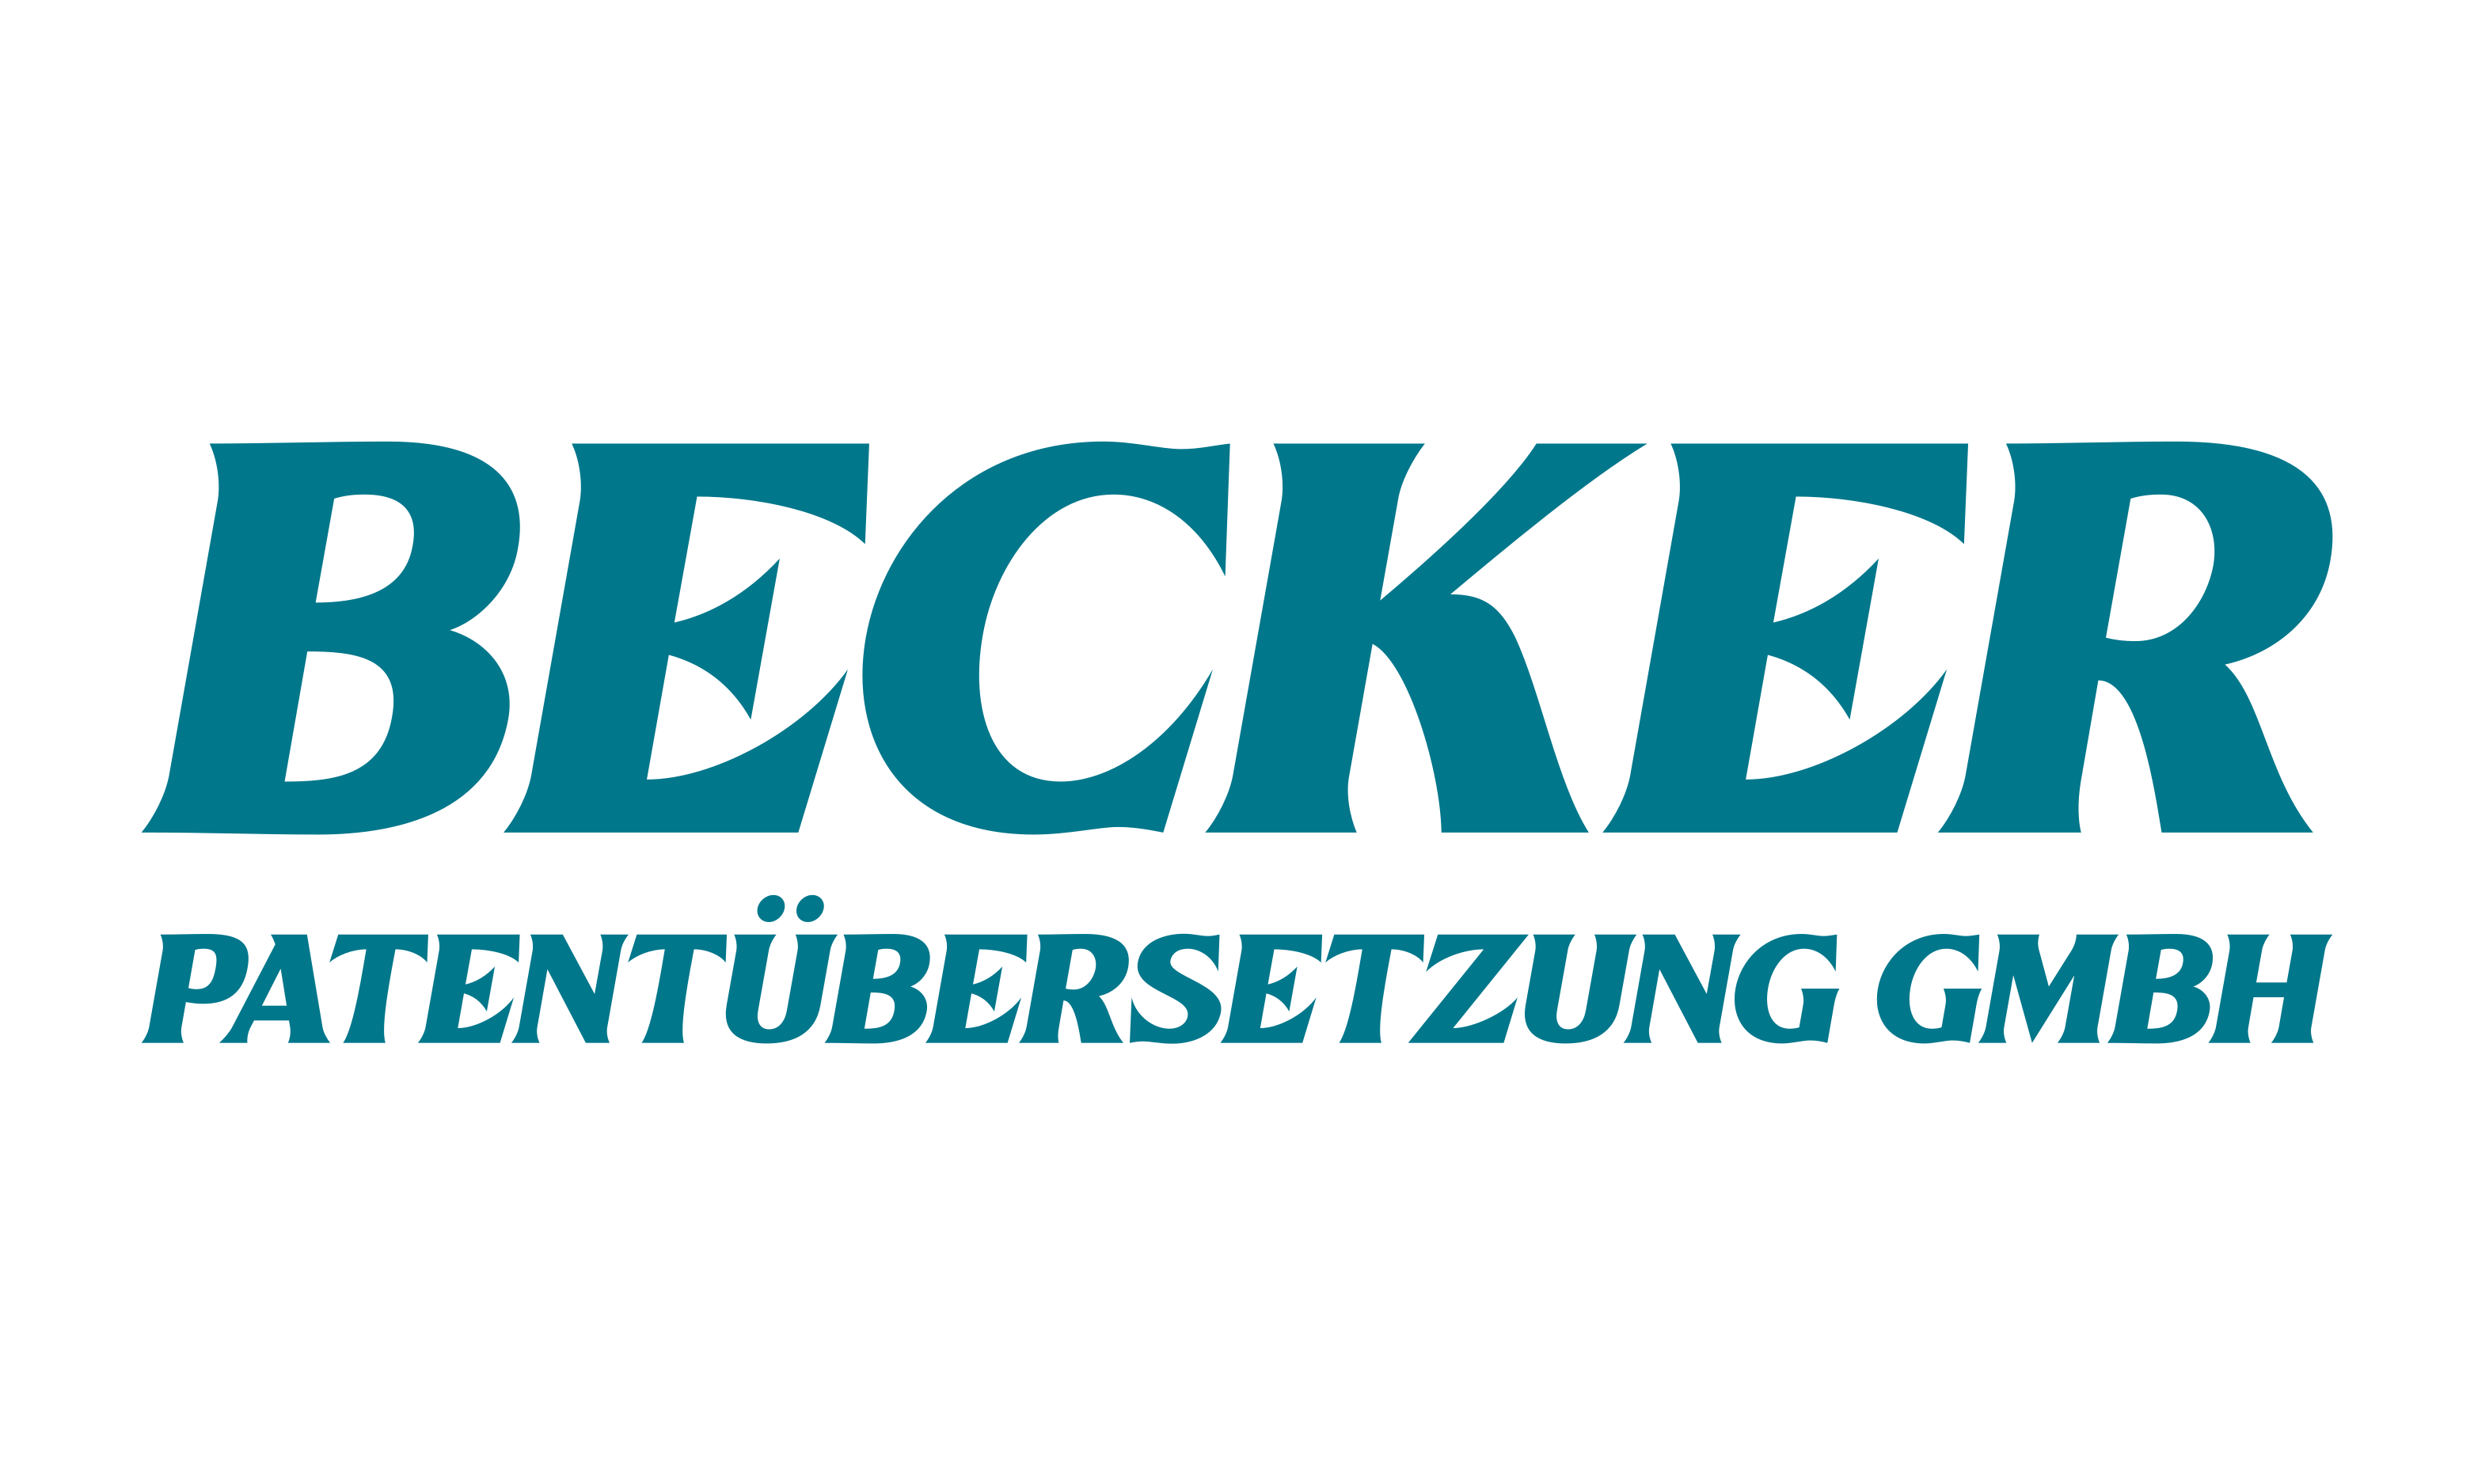 Becker Patentübersetzung GmbH